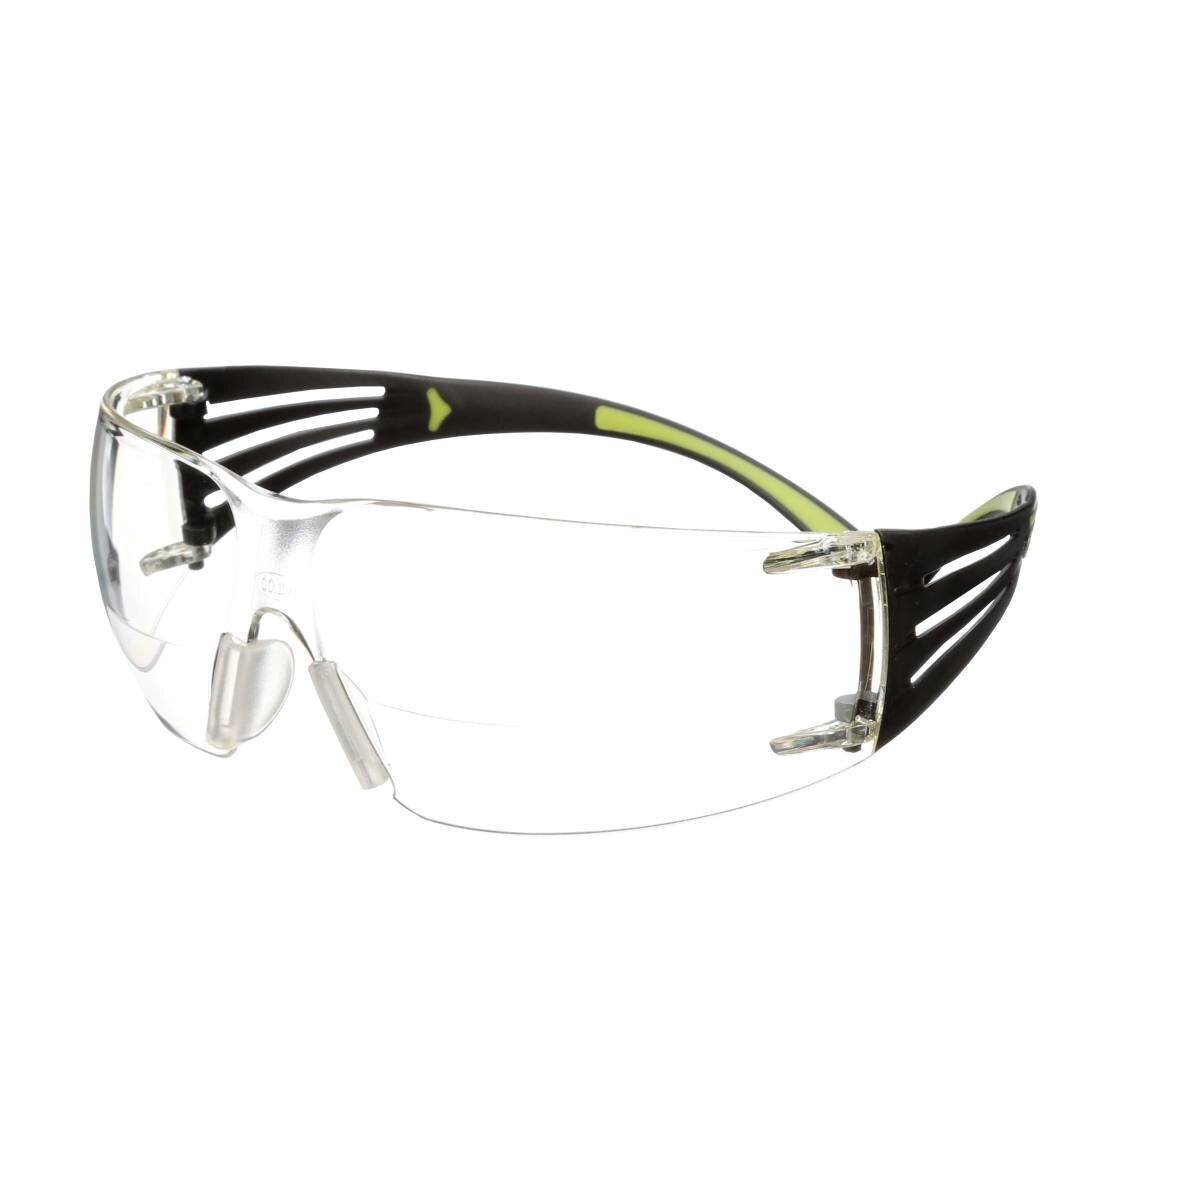 3M Gafas de protección SecureFit 400 Reader, patillas negras/verdes, tratamiento antirrayas/antivaho, lente transparente con resistencia +2,0, SF420AS/AF-EU